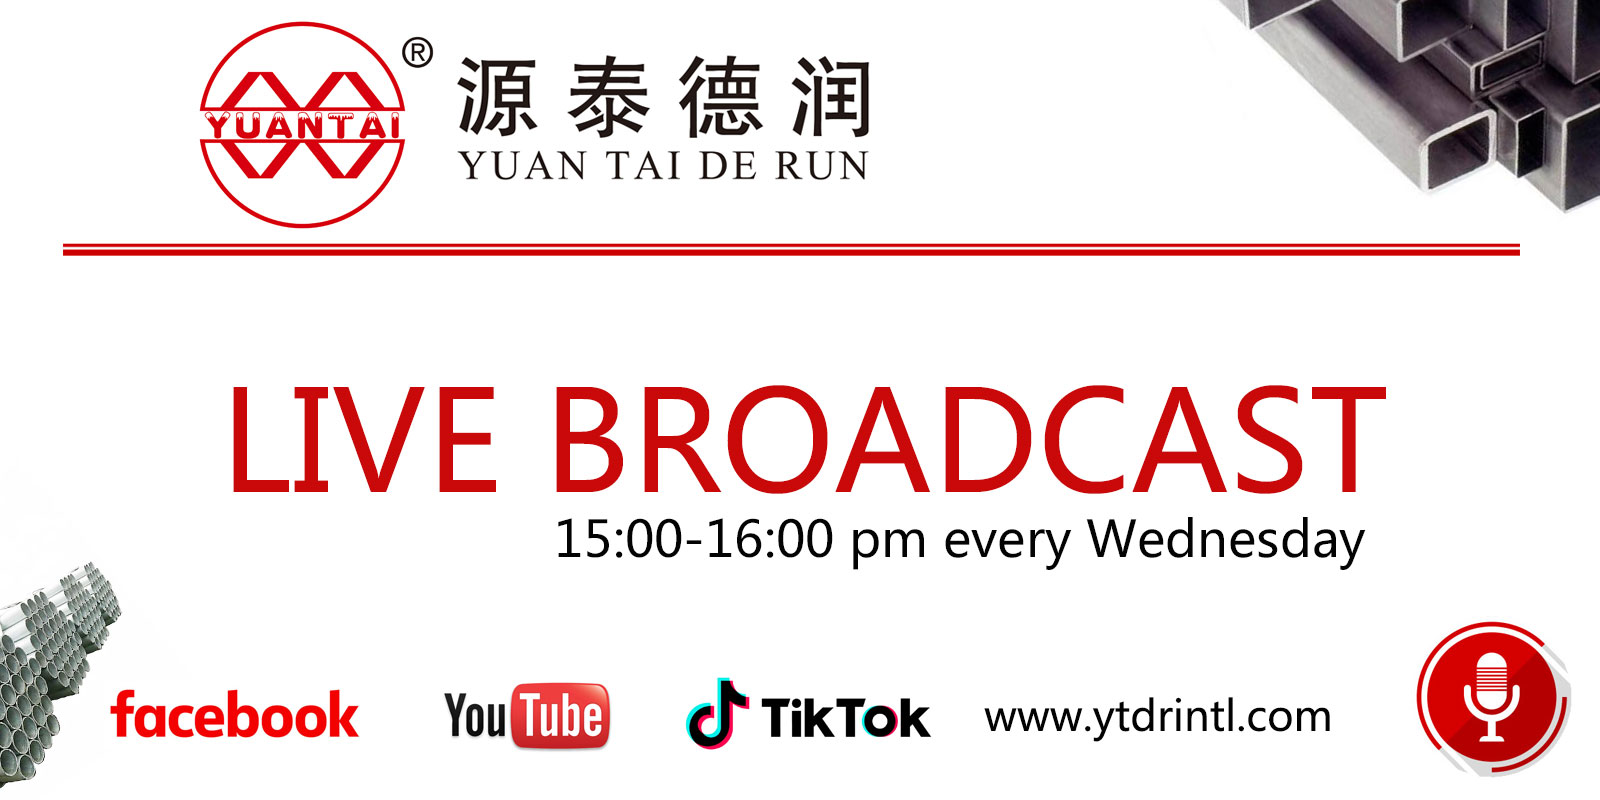 Grupul de producție de țevi de oțel Tianjin yuantaiderun se va întâlni în sala de transmisie live a Facebook și tiktok la ora 15:00 în fiecare zi lucrătoare pentru a primi consultarea online și pr...